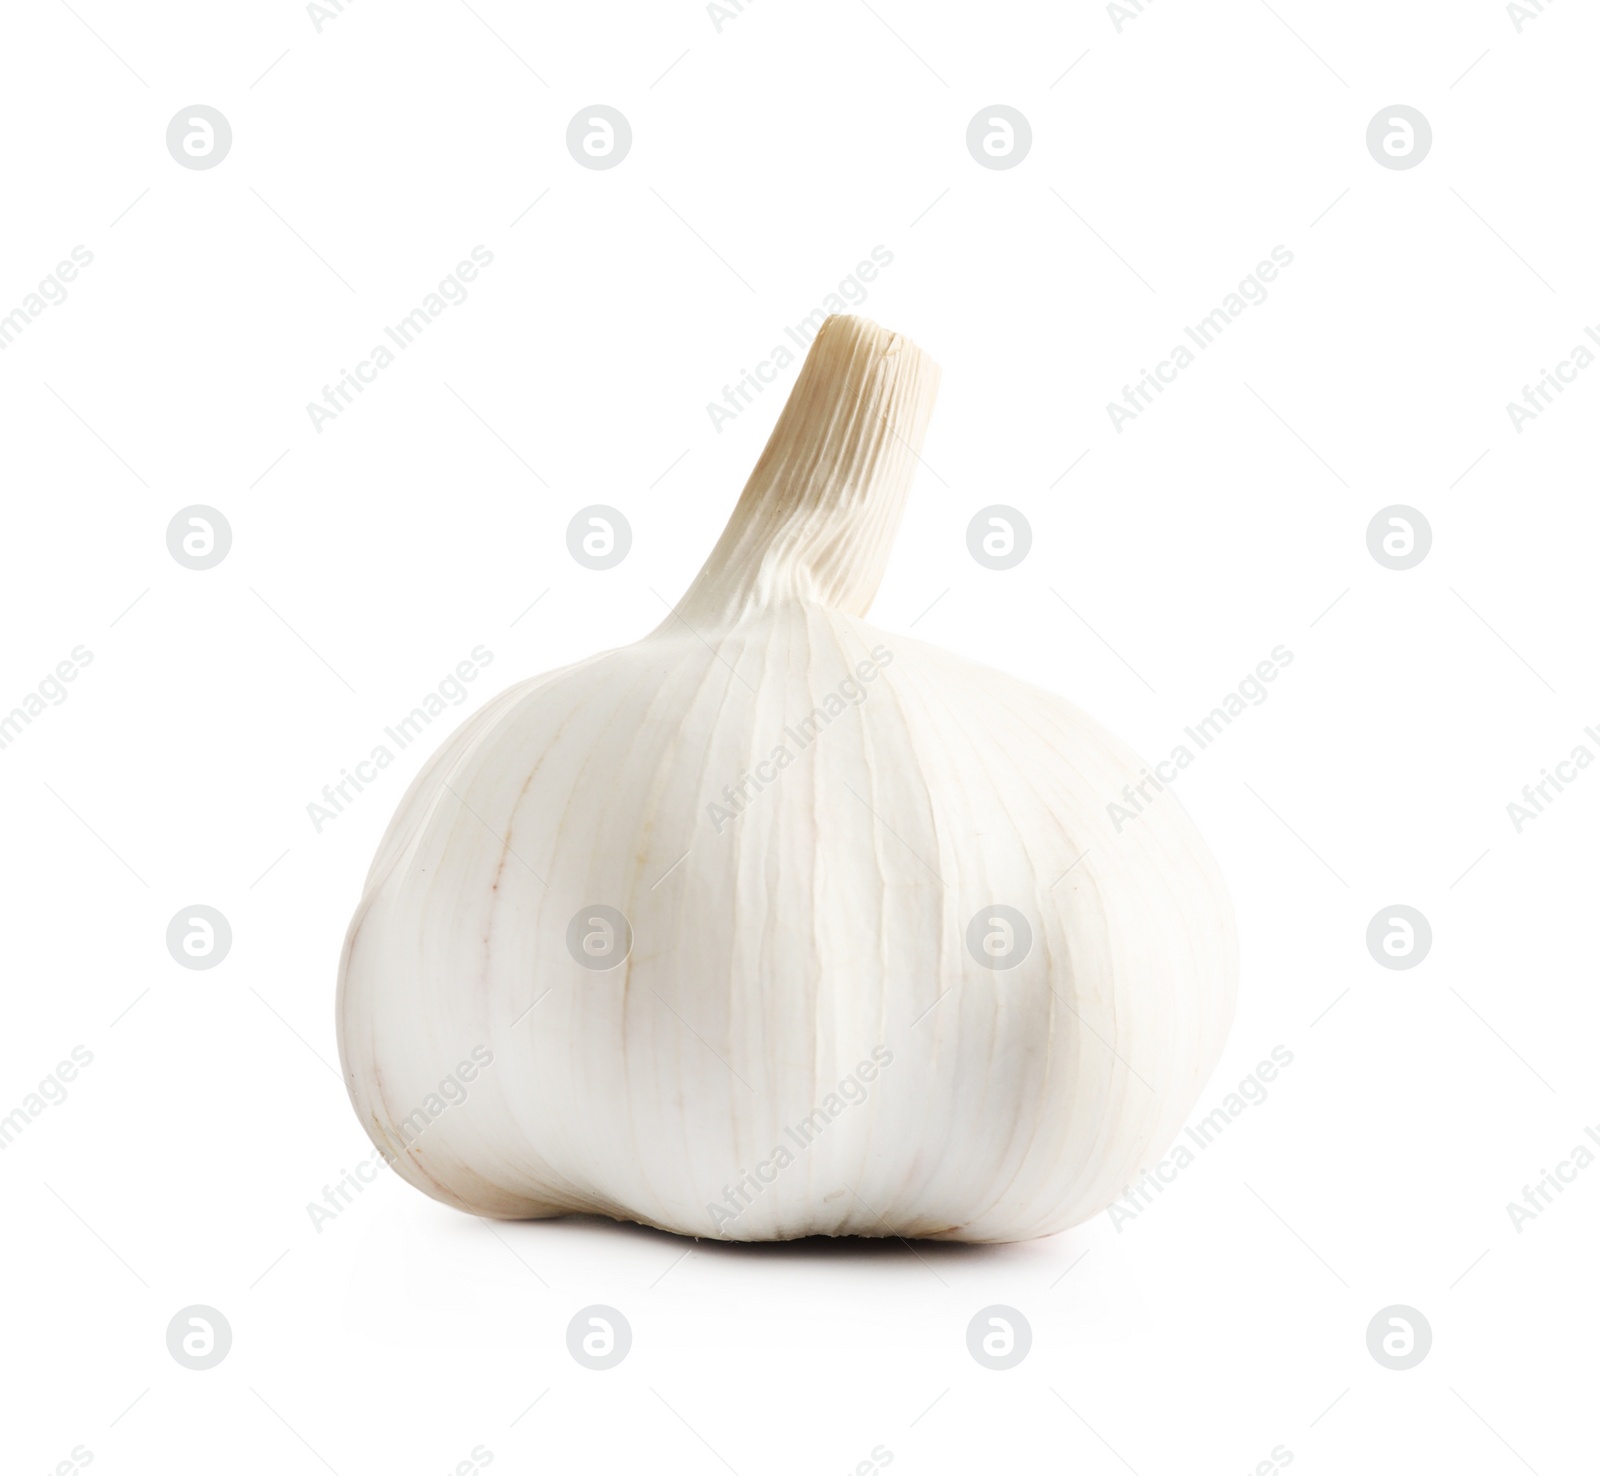 Photo of Fresh organic garlic bulb isolated on white